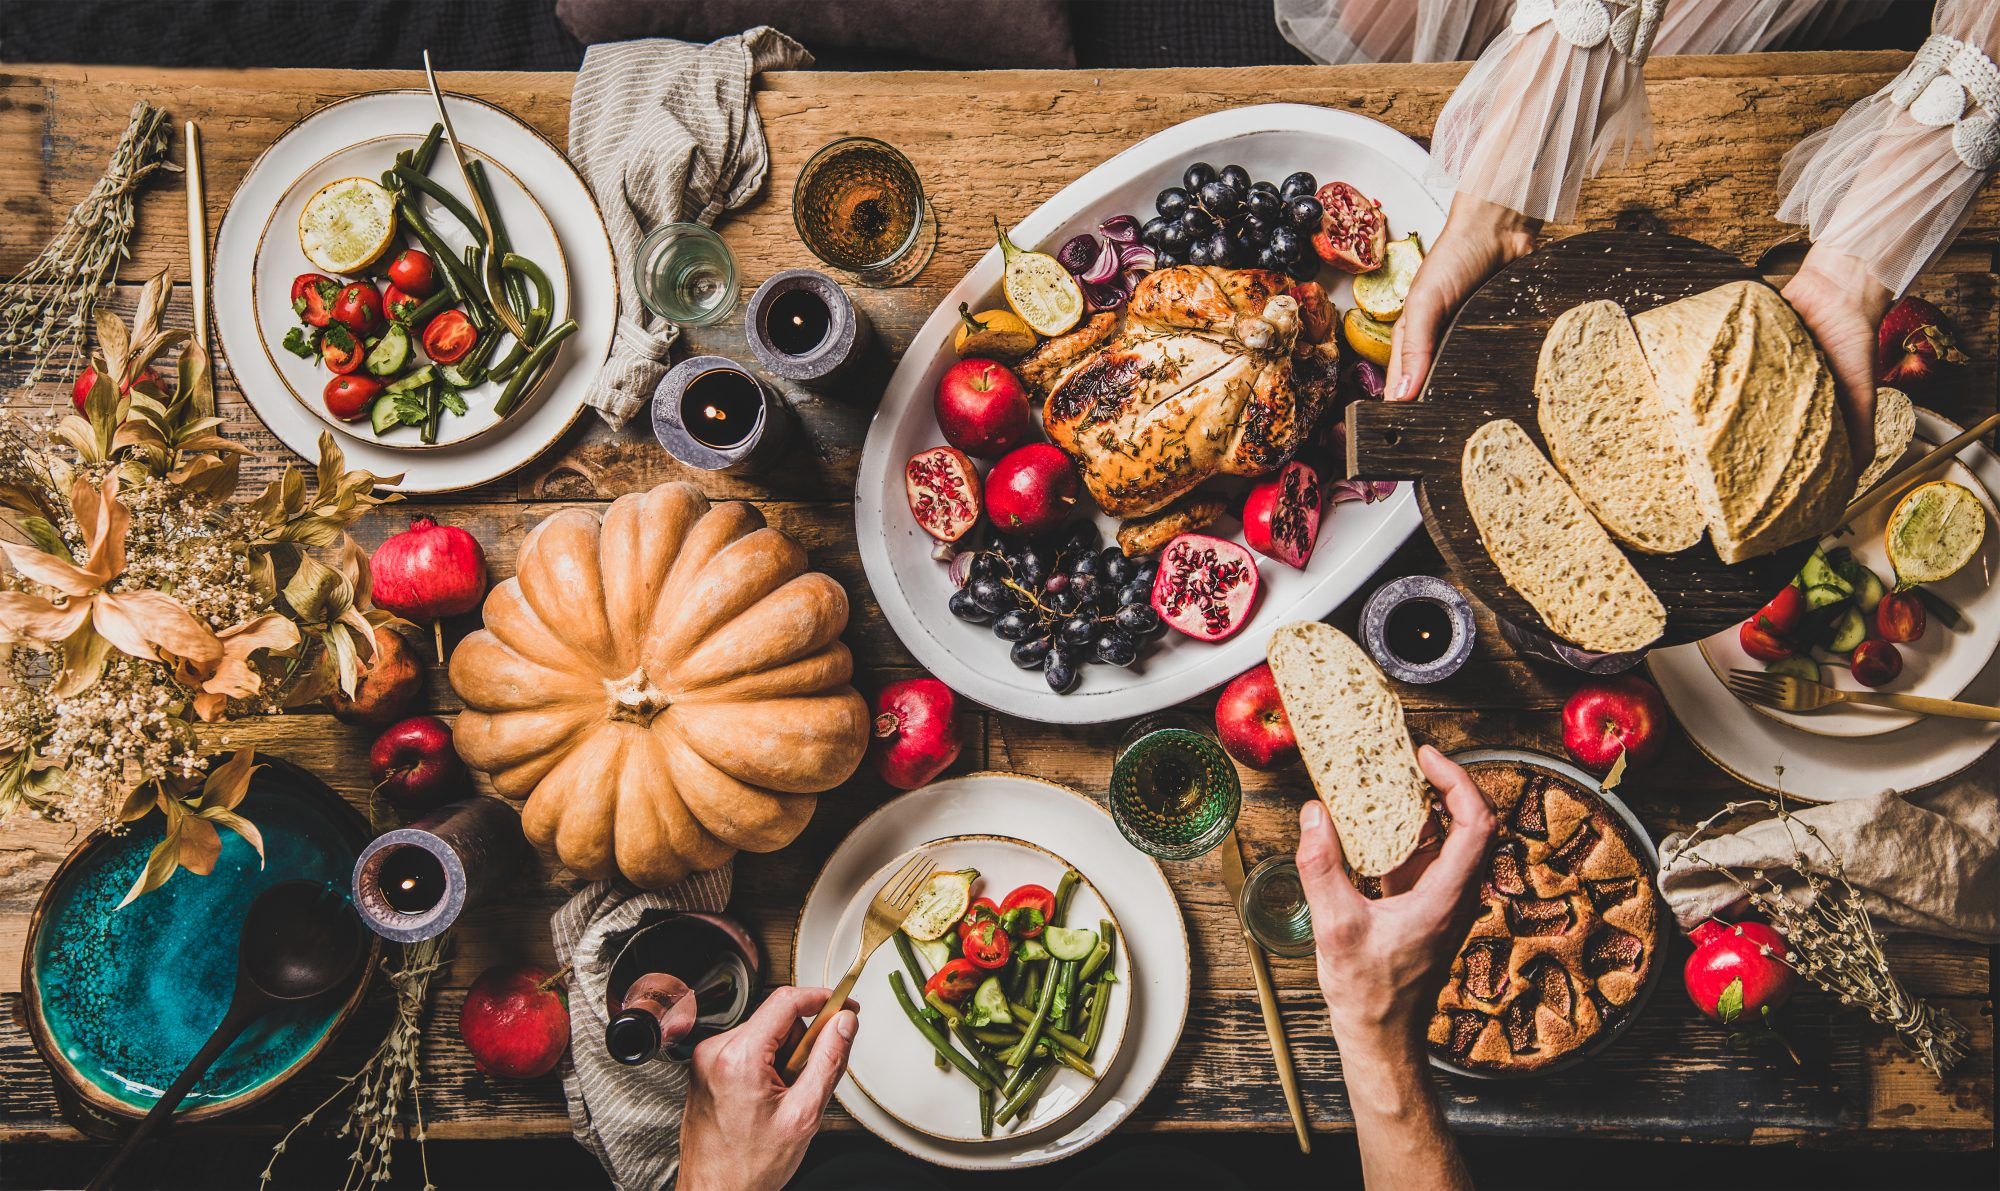 Slijedite ovih 6 jednostavnih koraka da ugostite Dan zahvalnosti za dvoje koji će se osjećati jednako svečano (i ukusno) kao i uvijek